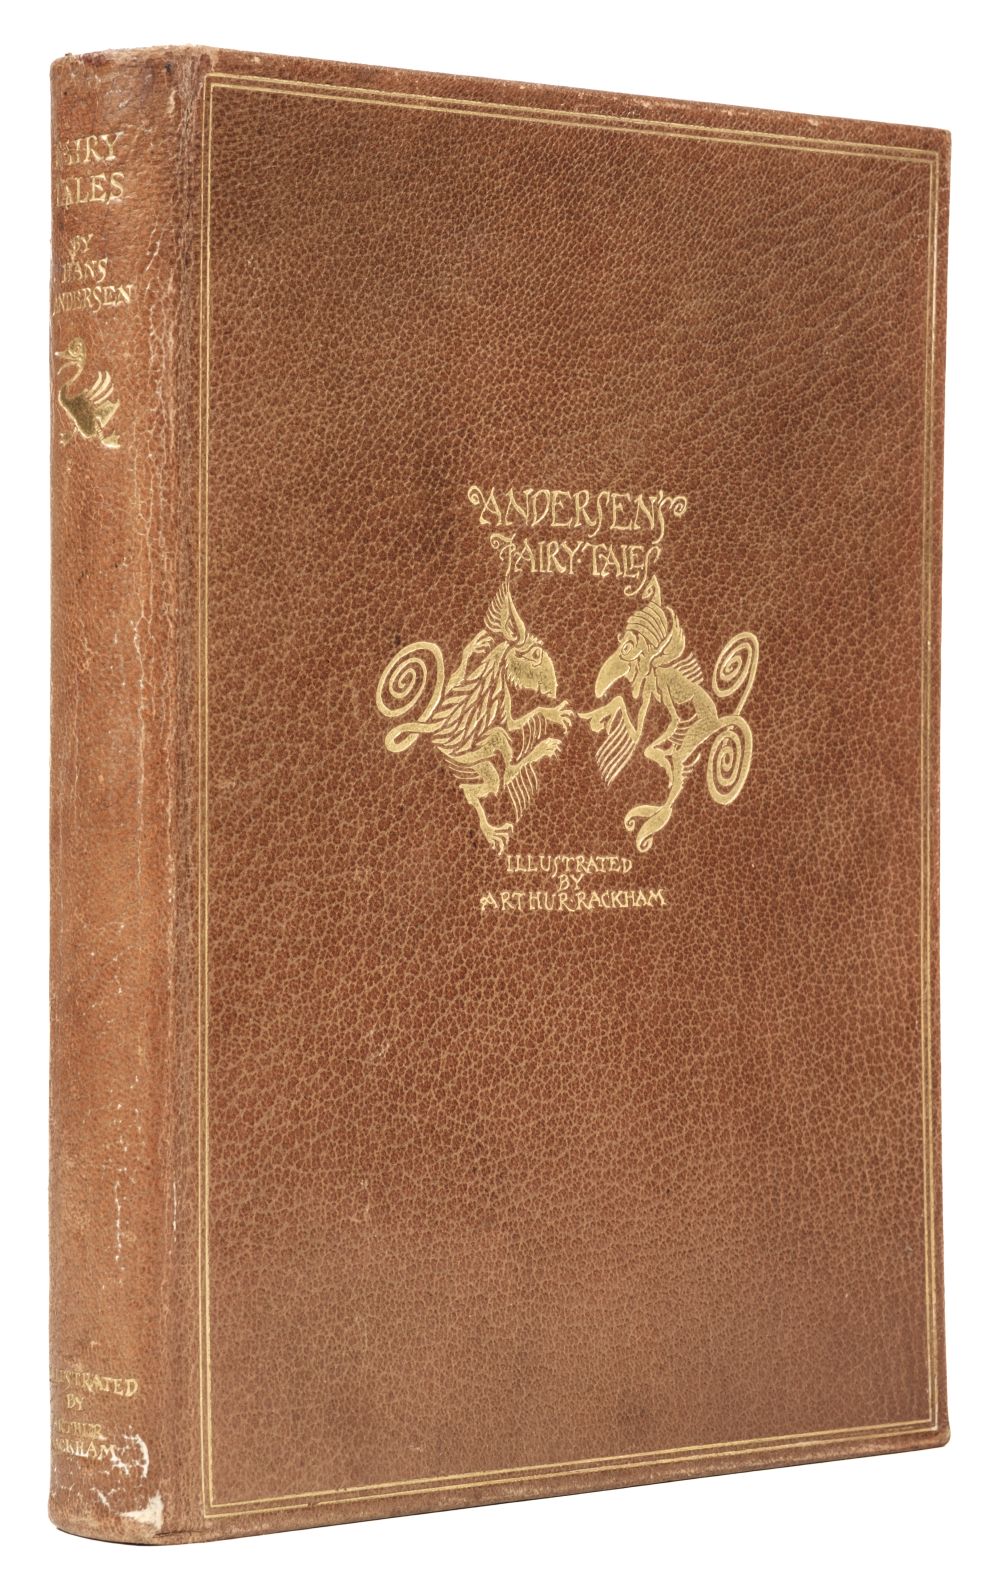 Rackham (Arthur, illustrator). Fairy Tales of Hans Andersen, 1932